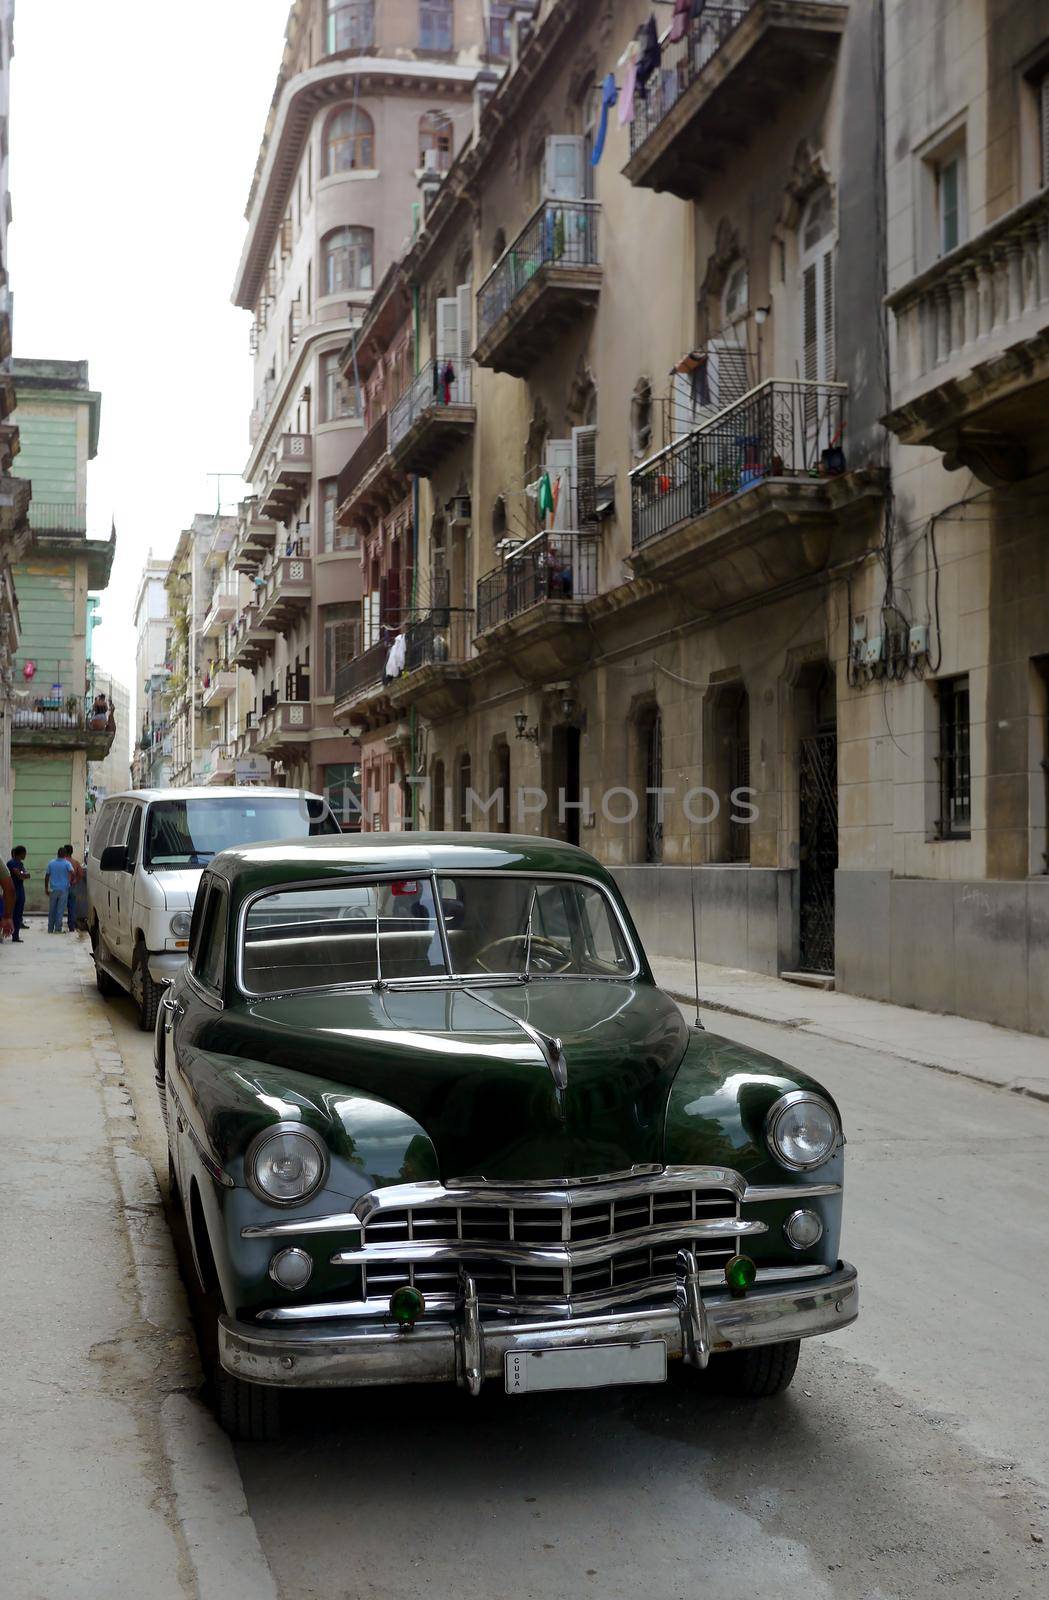 Old car in Havana backstreet, Cuba by fivepointsix